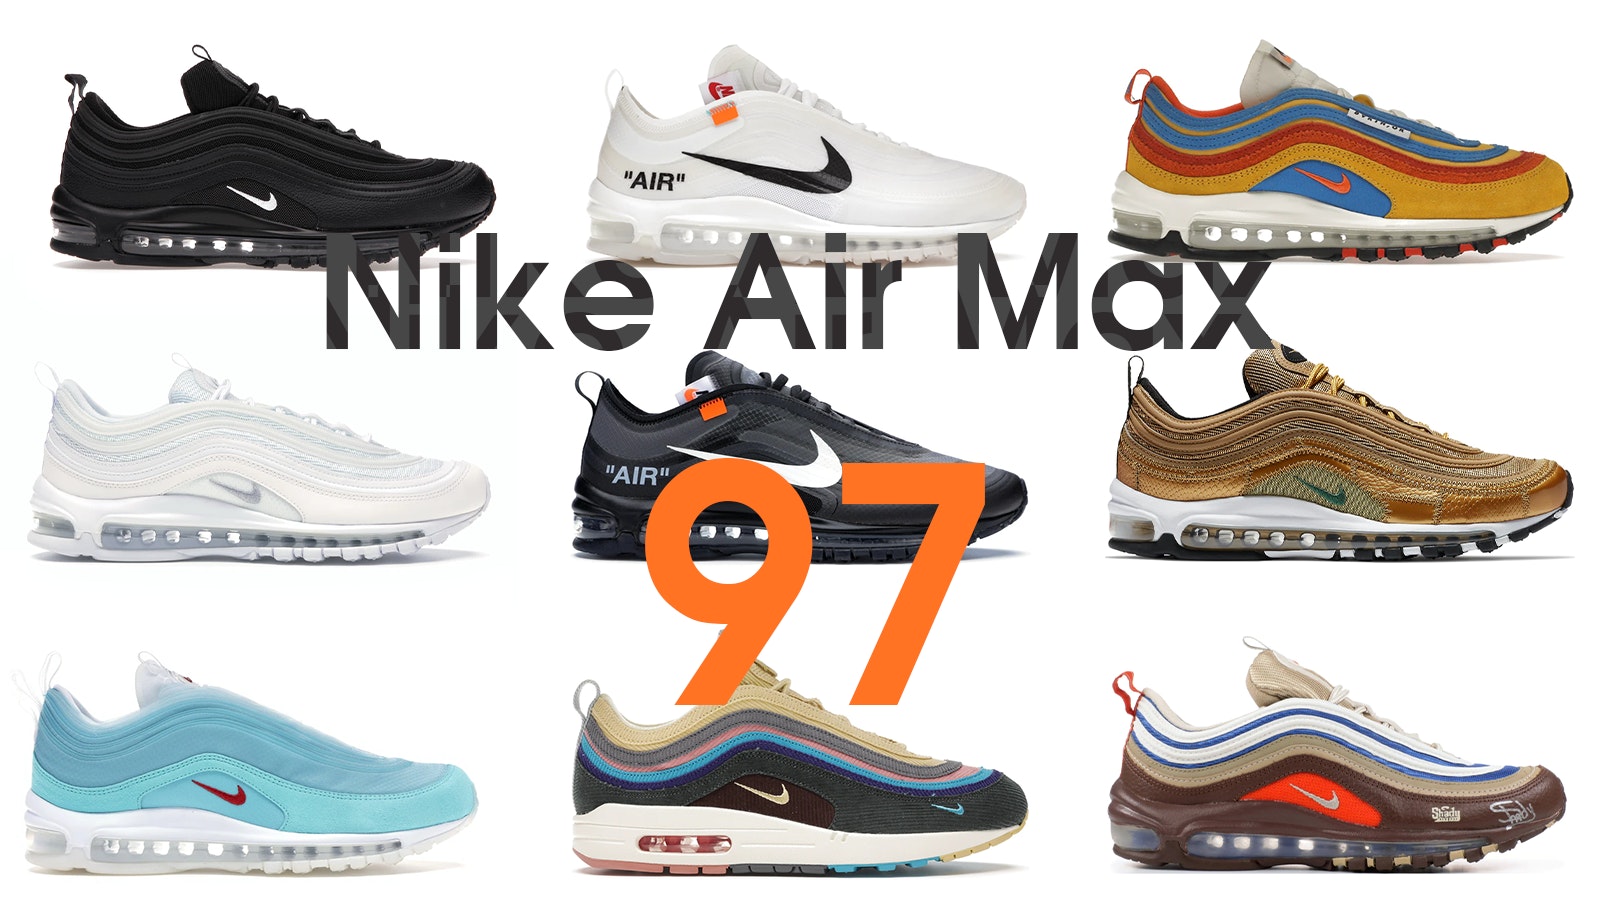 Nike Air Max 97 Review